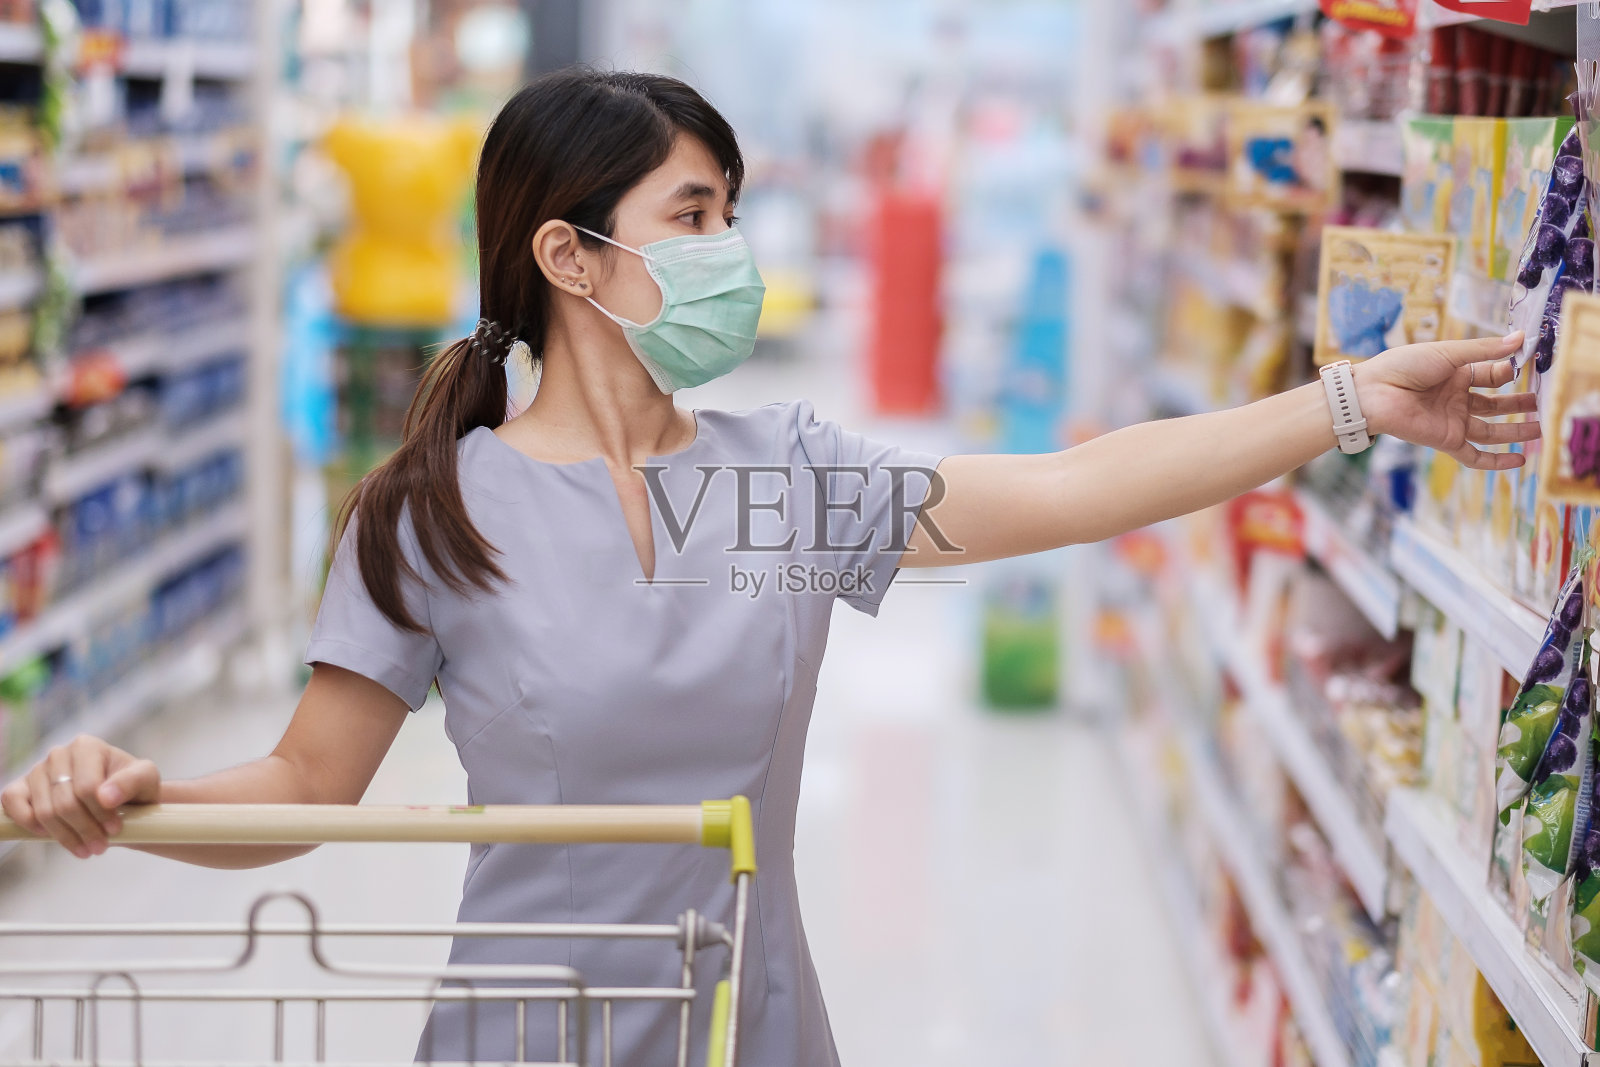 年轻妇女戴上防护口罩并在杂货店或百货商店购物可以保护冠状病毒感染。社交距离、新常态和2019冠状病毒病大流行下的生活照片摄影图片